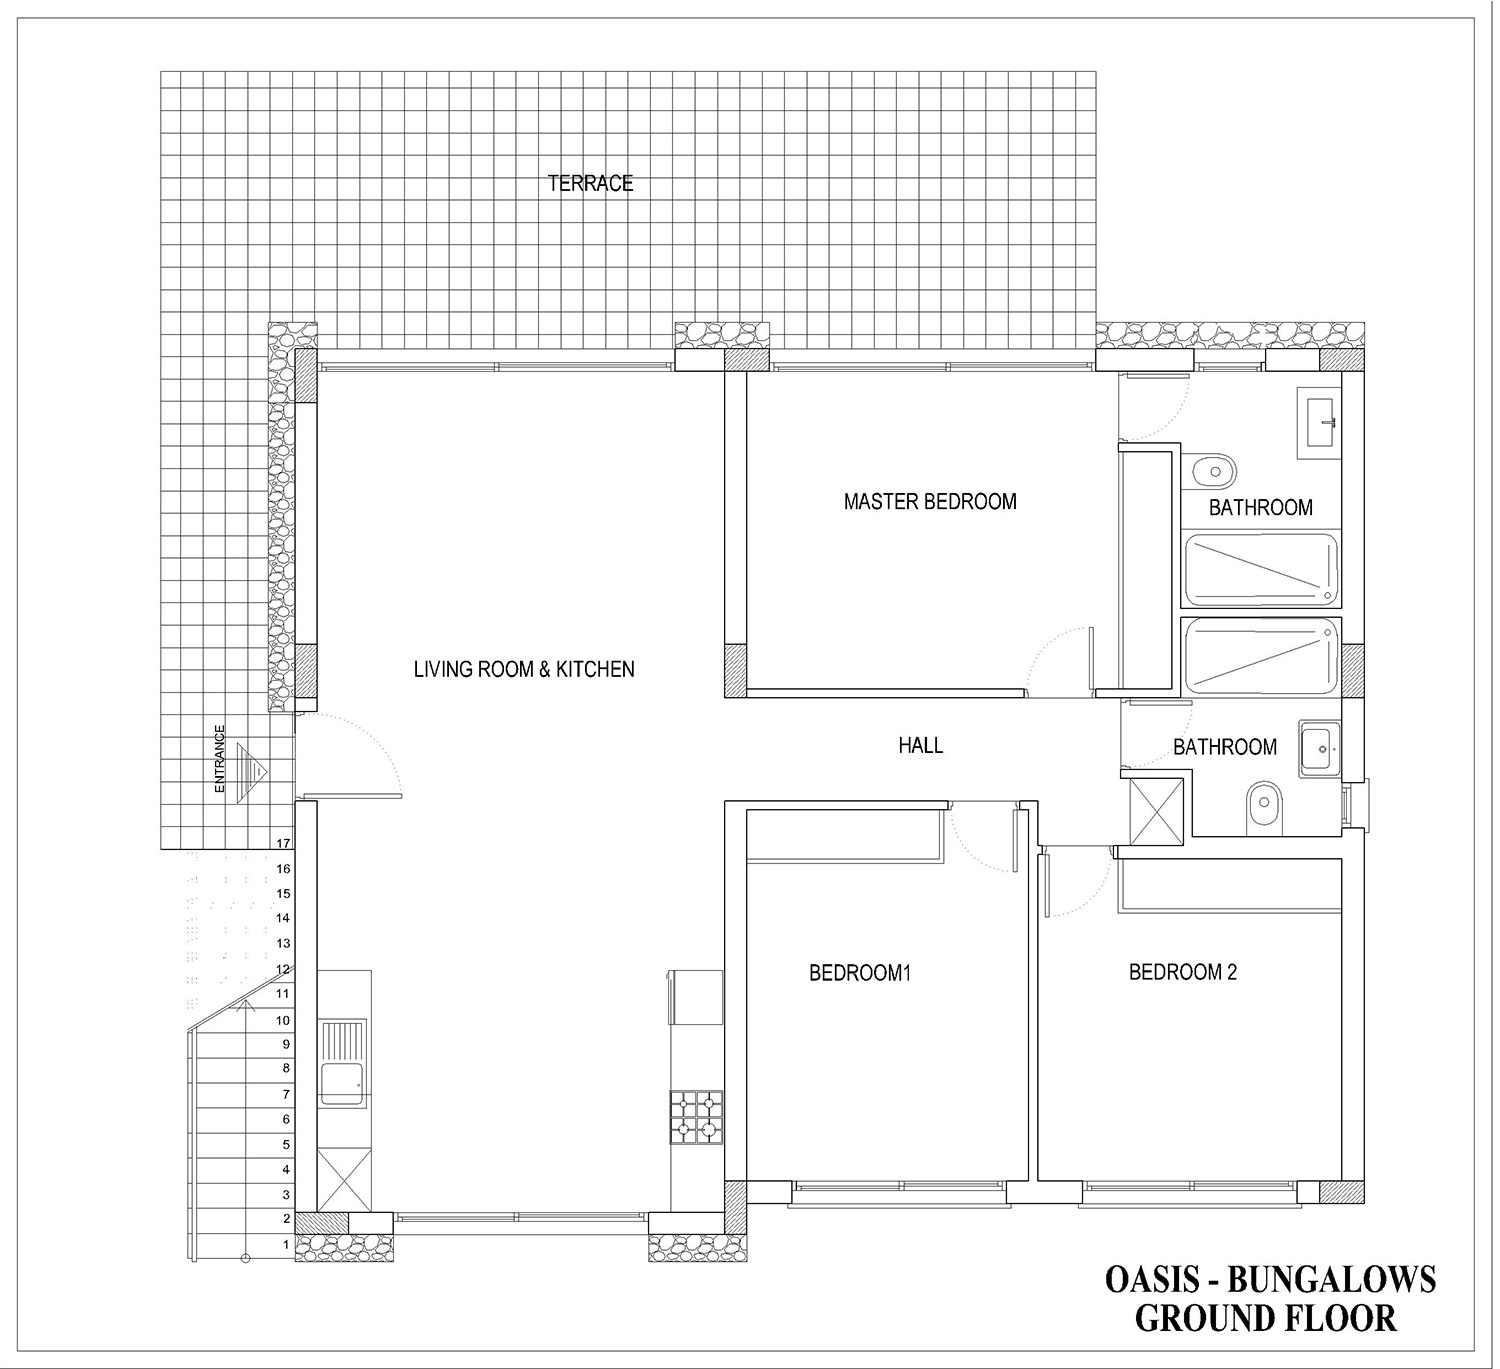 Floor Plan - Ground floor